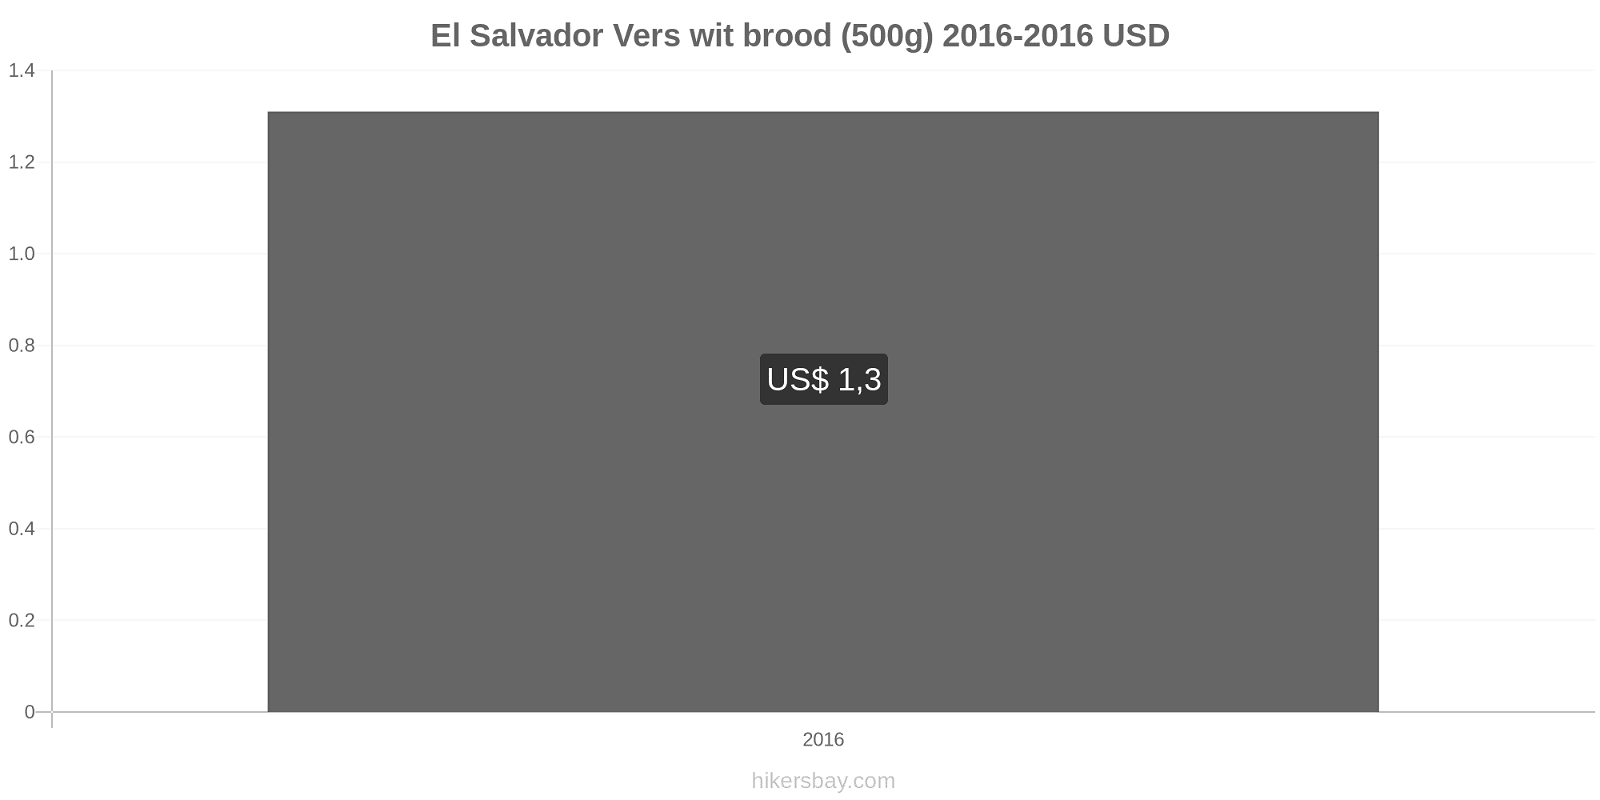 El Salvador prijswijzigingen Een brood van vers wit brood (500g) hikersbay.com